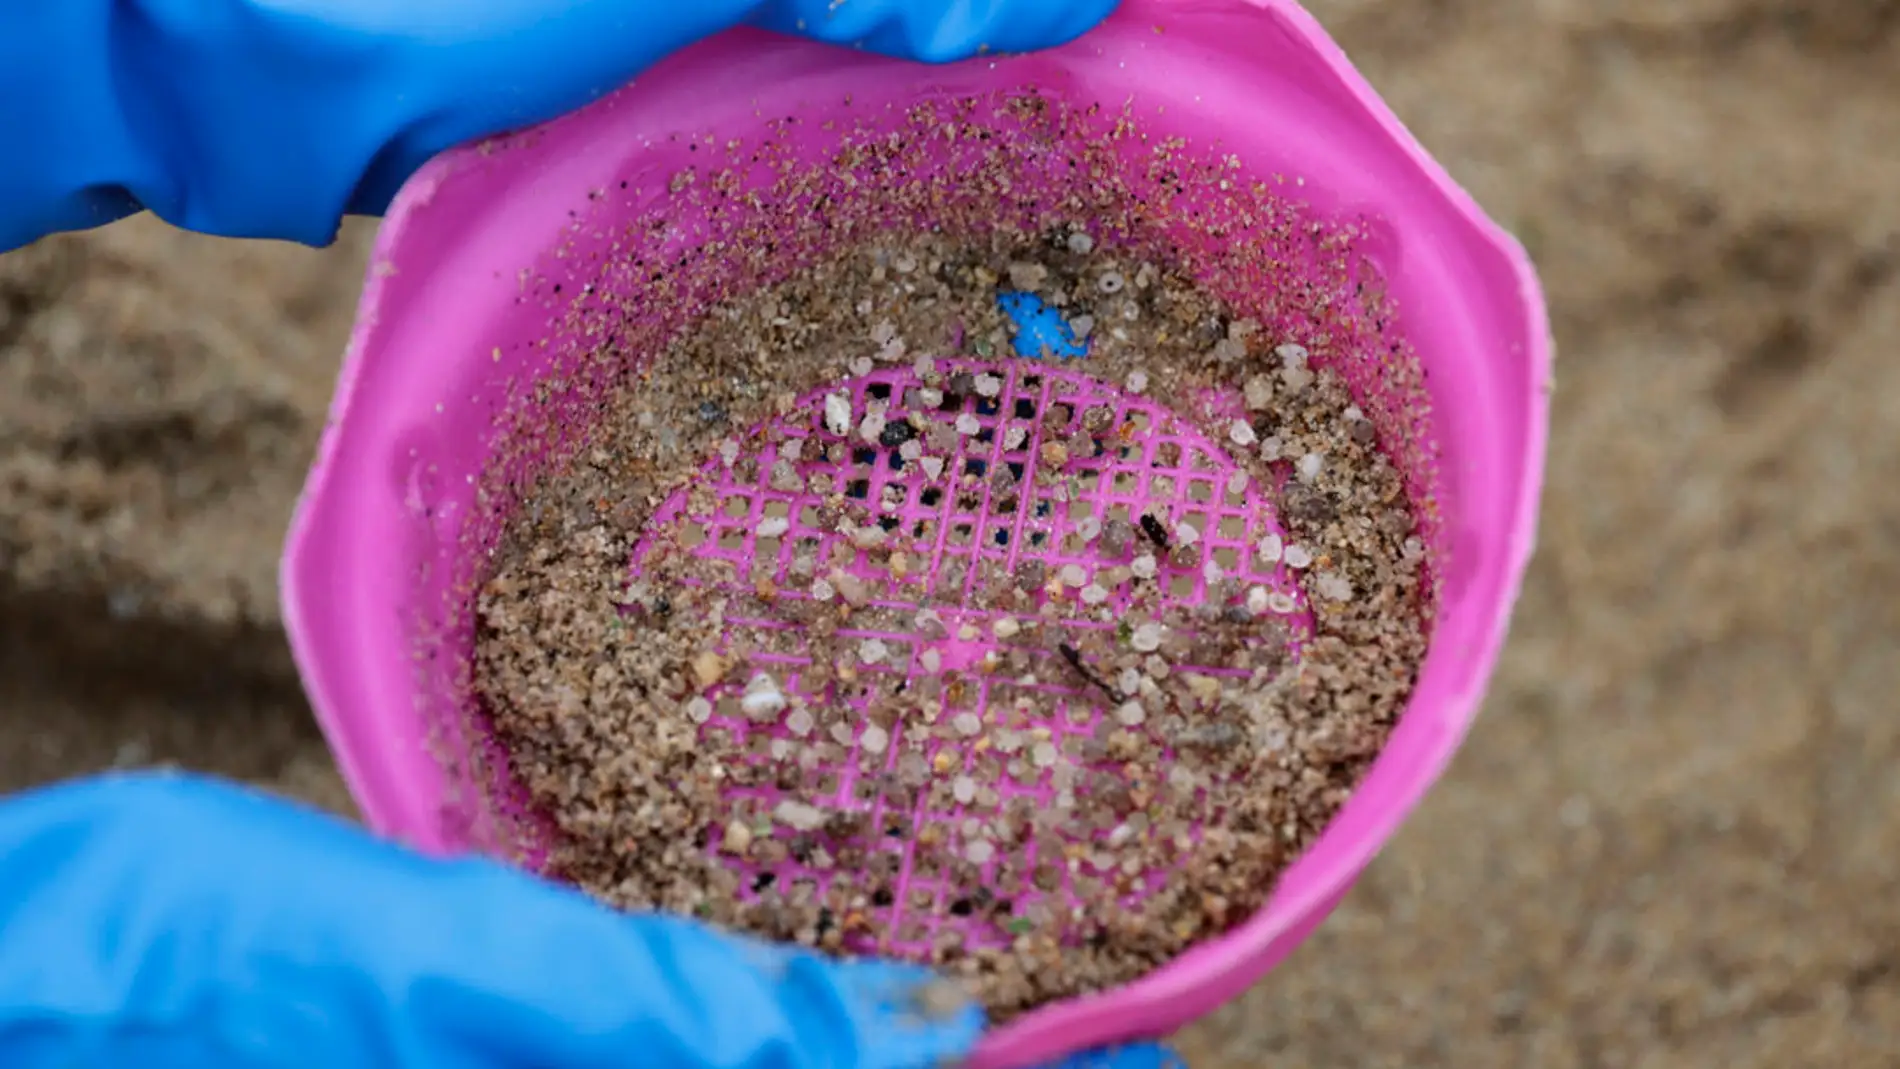 Una voluntaria recogía pellets de plástico este lunes en la playa coruñesa de O Portiño./ EFE/Cabalar